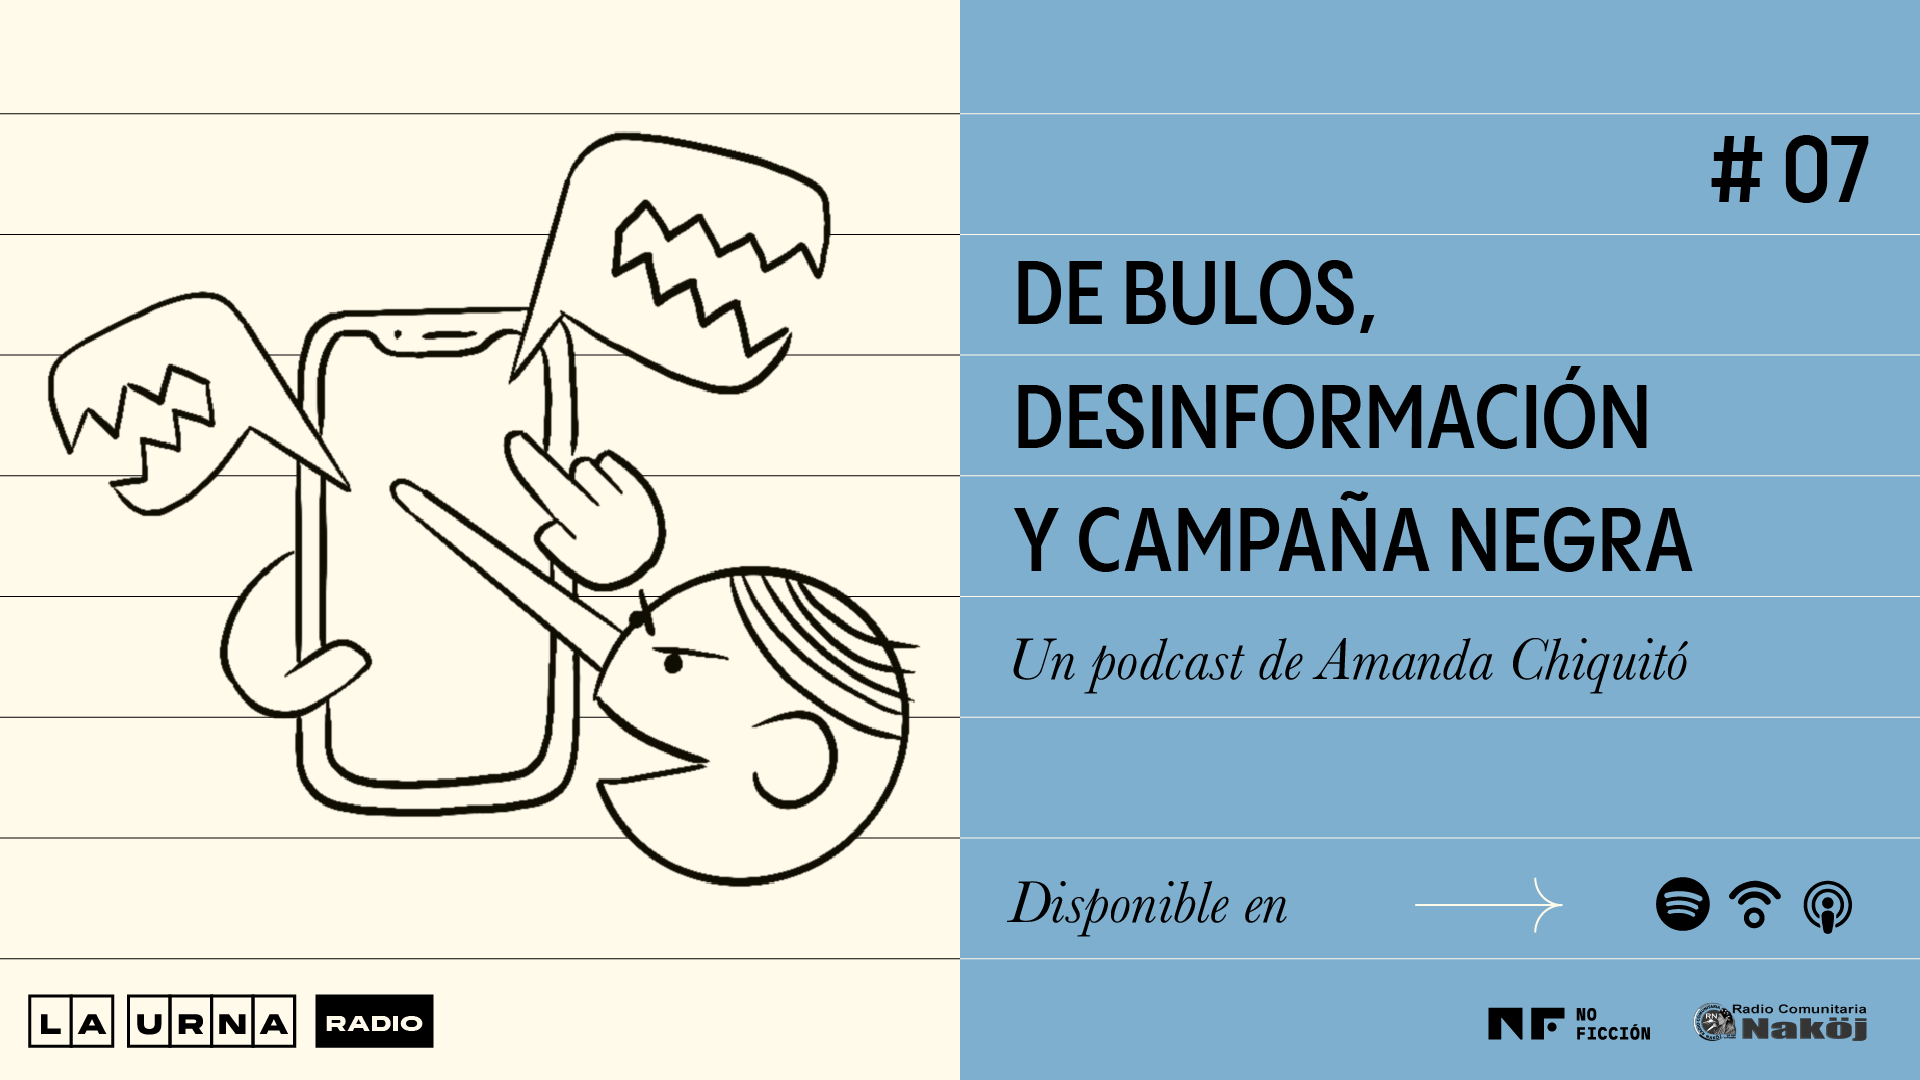 Ilustración podcast La Urna Radio sobre desinformación.